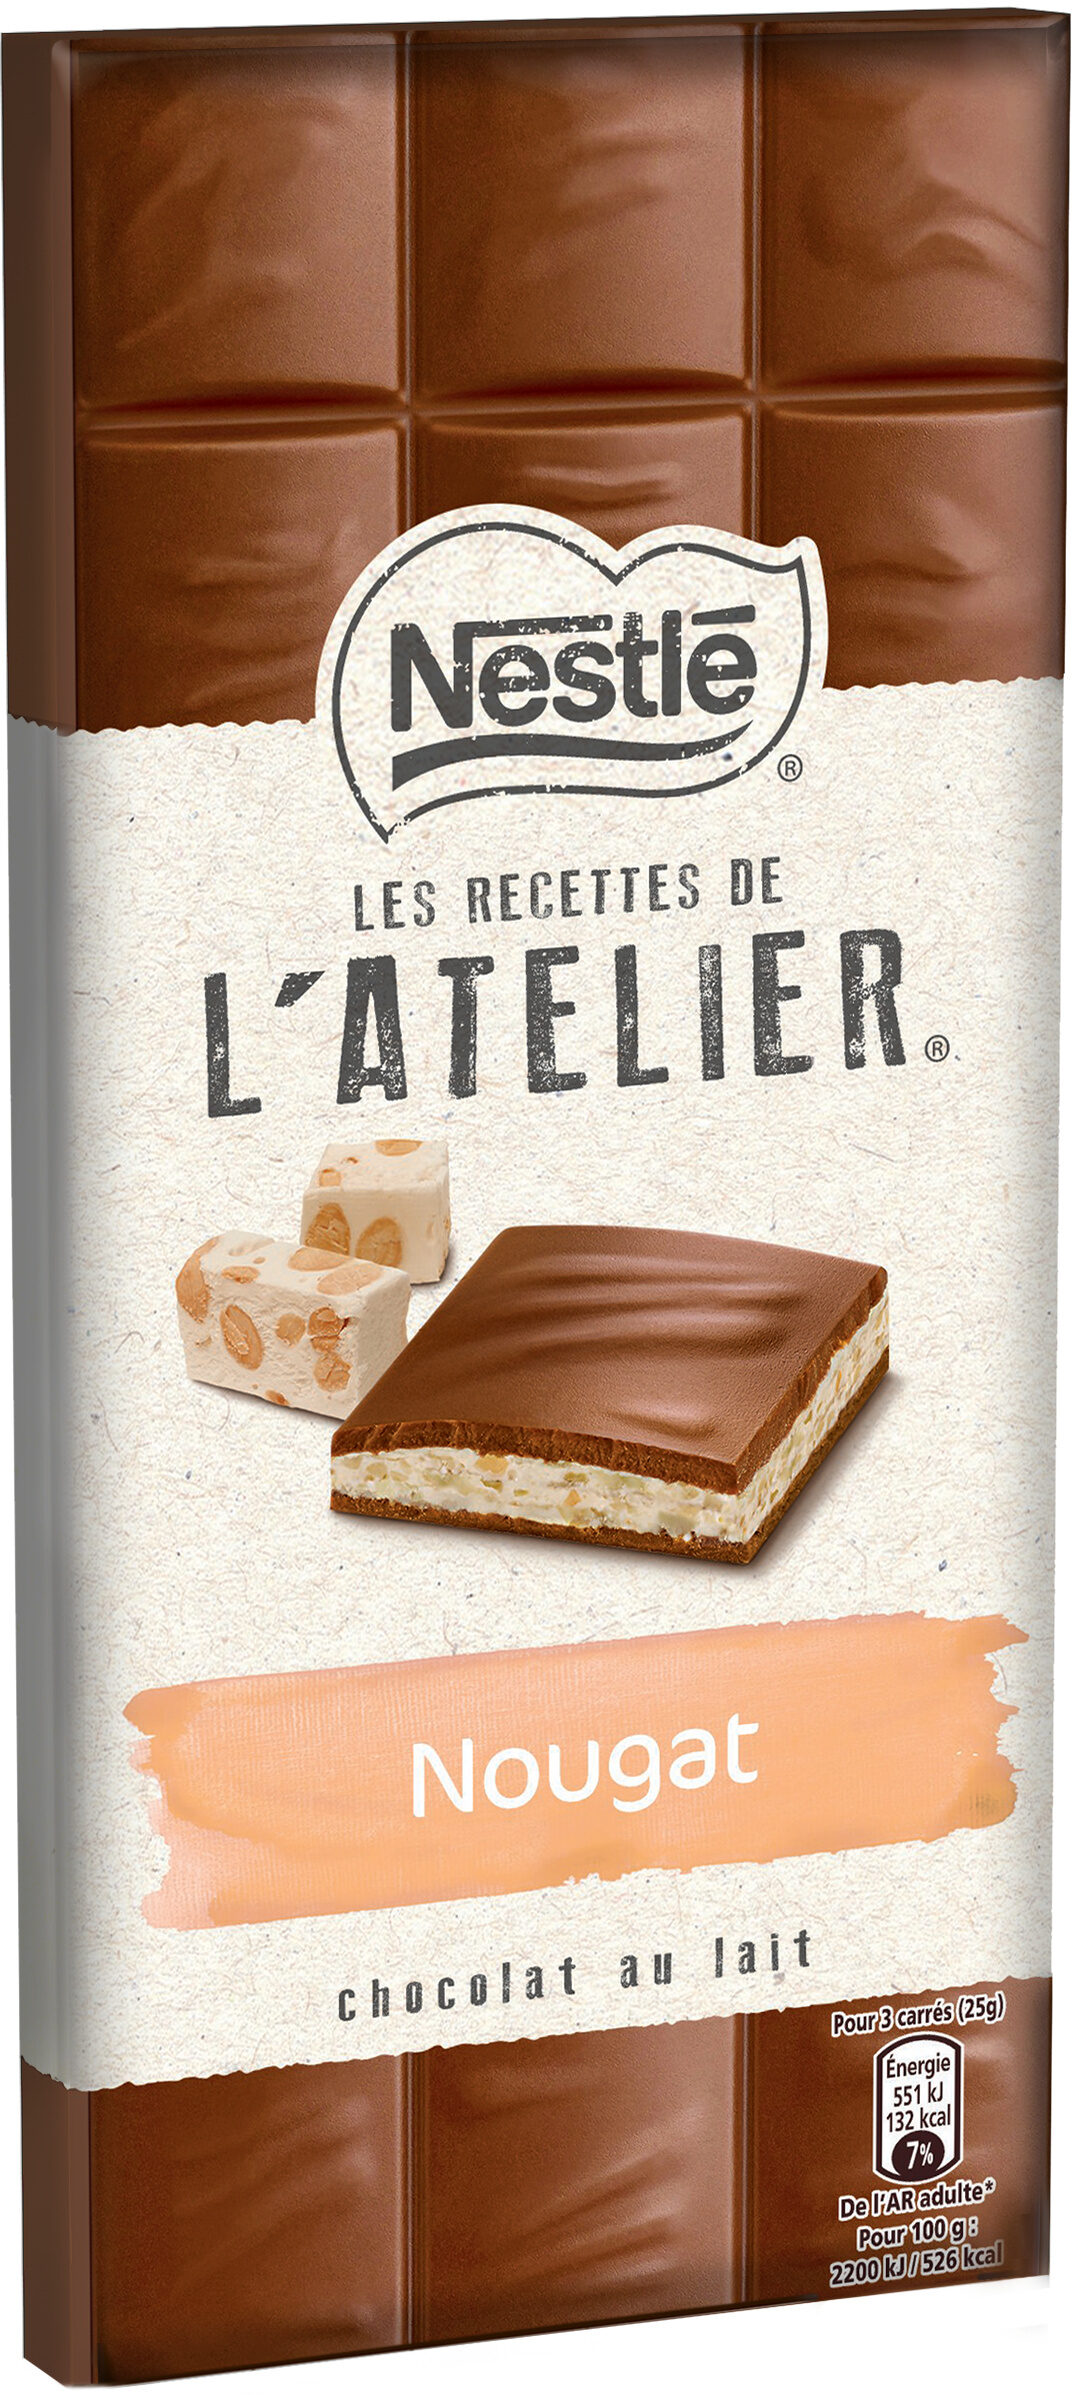 NESTLE L'ATELIER Chocolat au Lait et Nougat 150g - Producto - fr